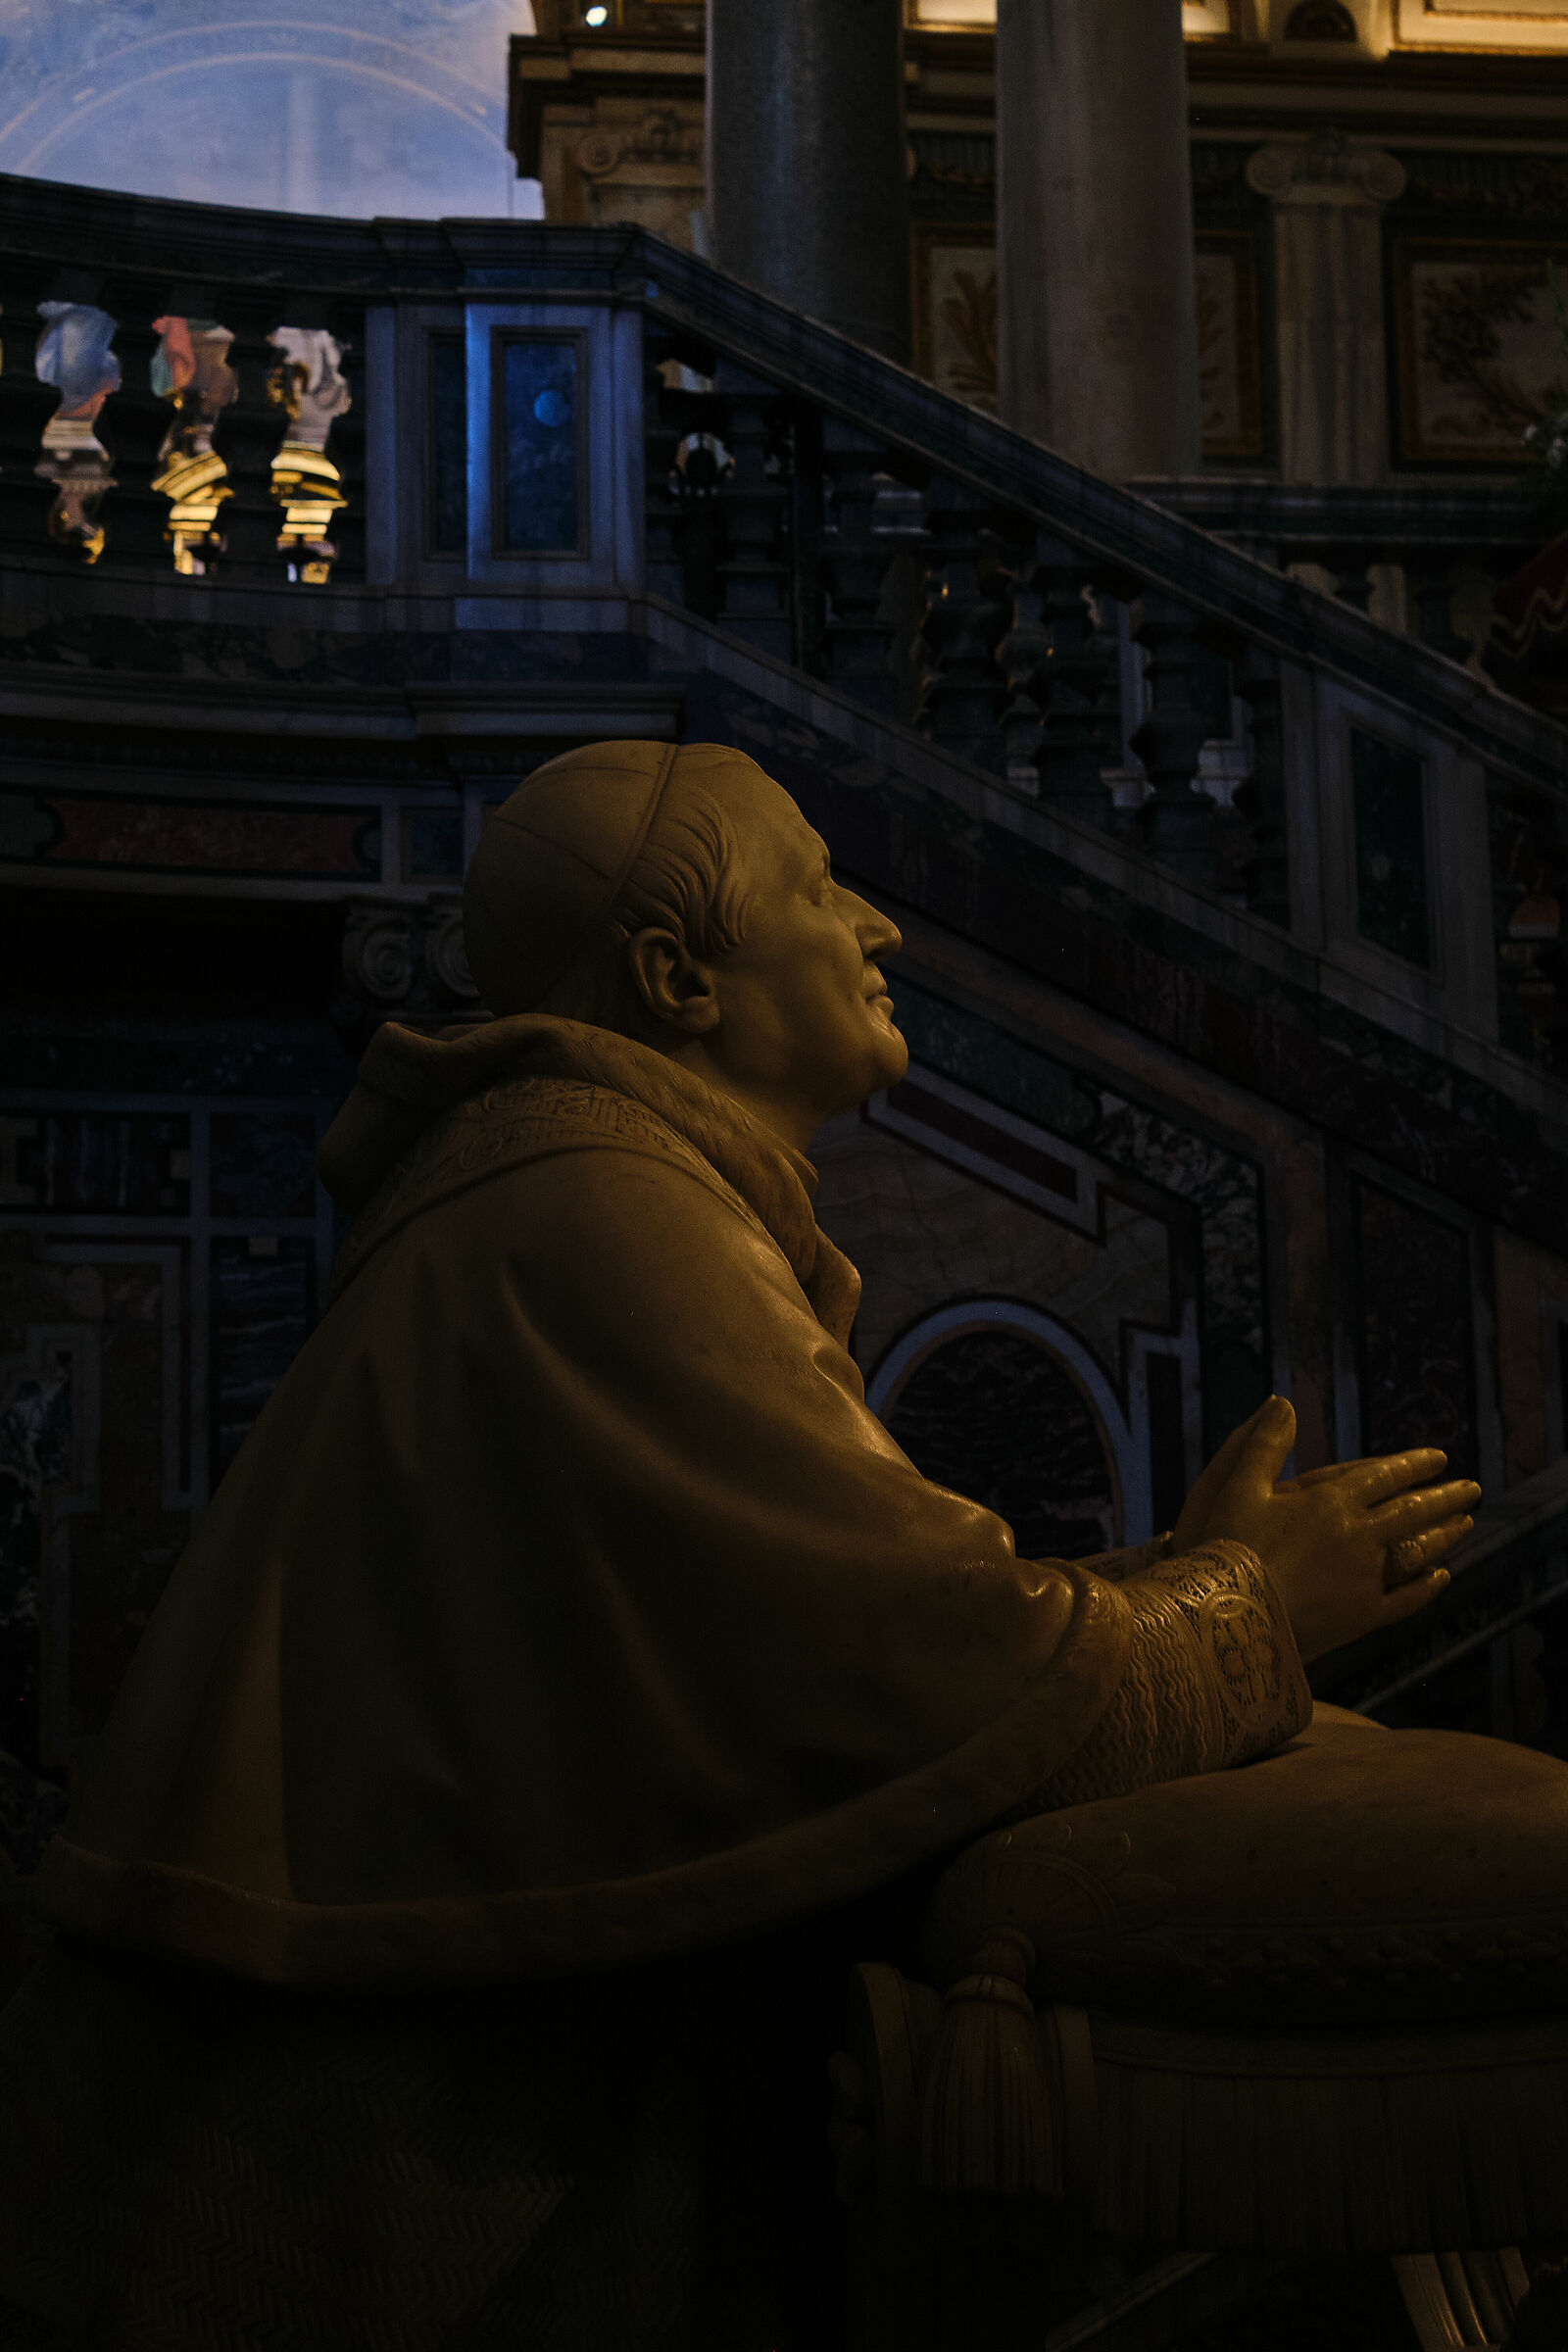 Giovanni Paolo II...